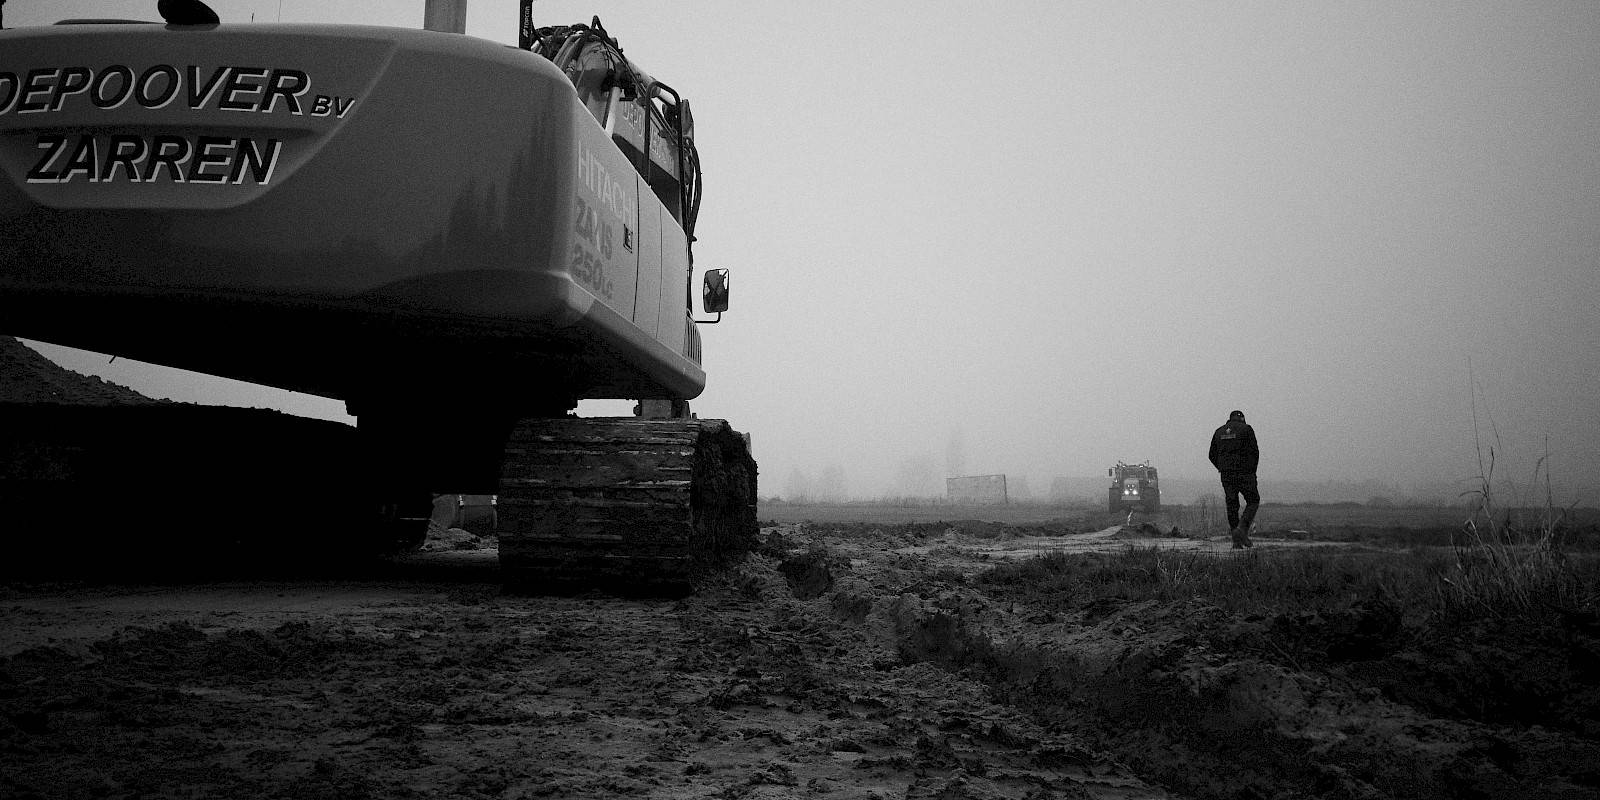 Photographie en noir et blanc d'une grue excavatrice dans un champ, avec un ouvrier et un tracteur à l'arrière-plan